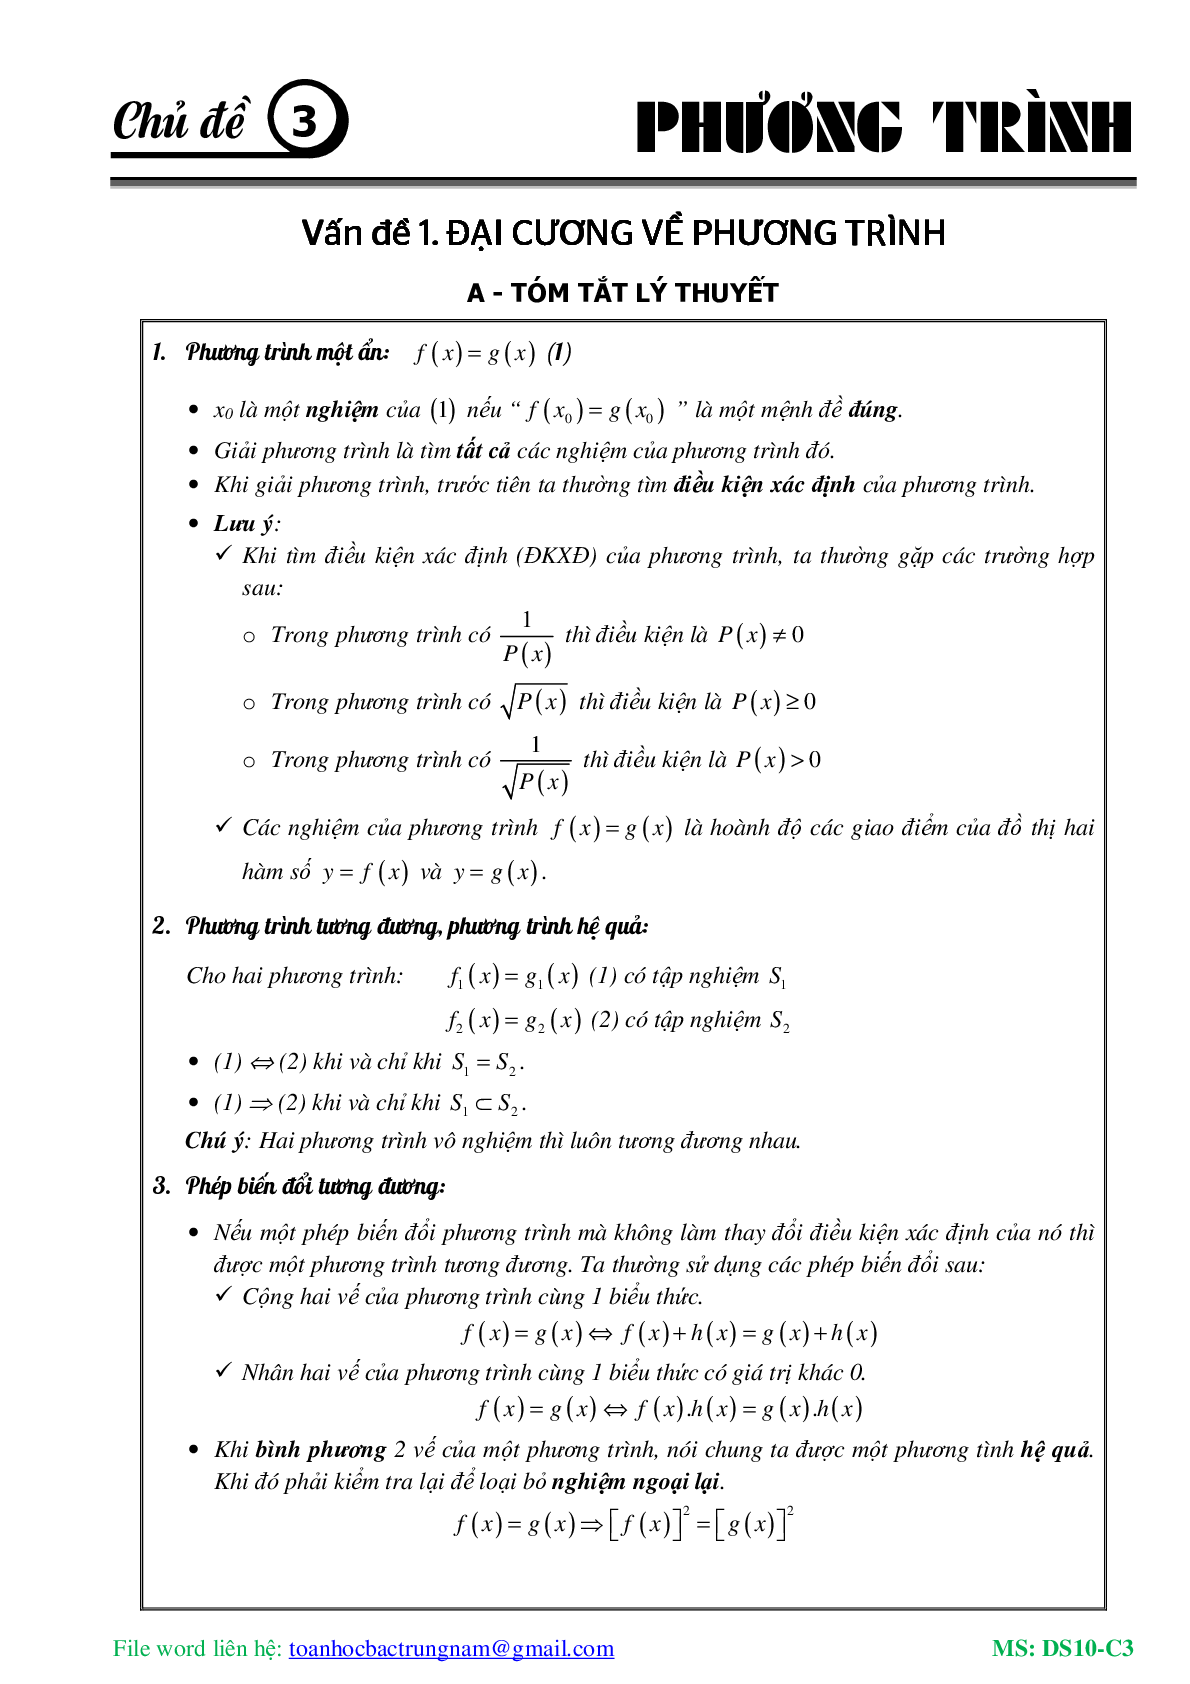 Lý thuyết, bài tập về Phương trình và hệ phương trình có đáp án (trang 2)